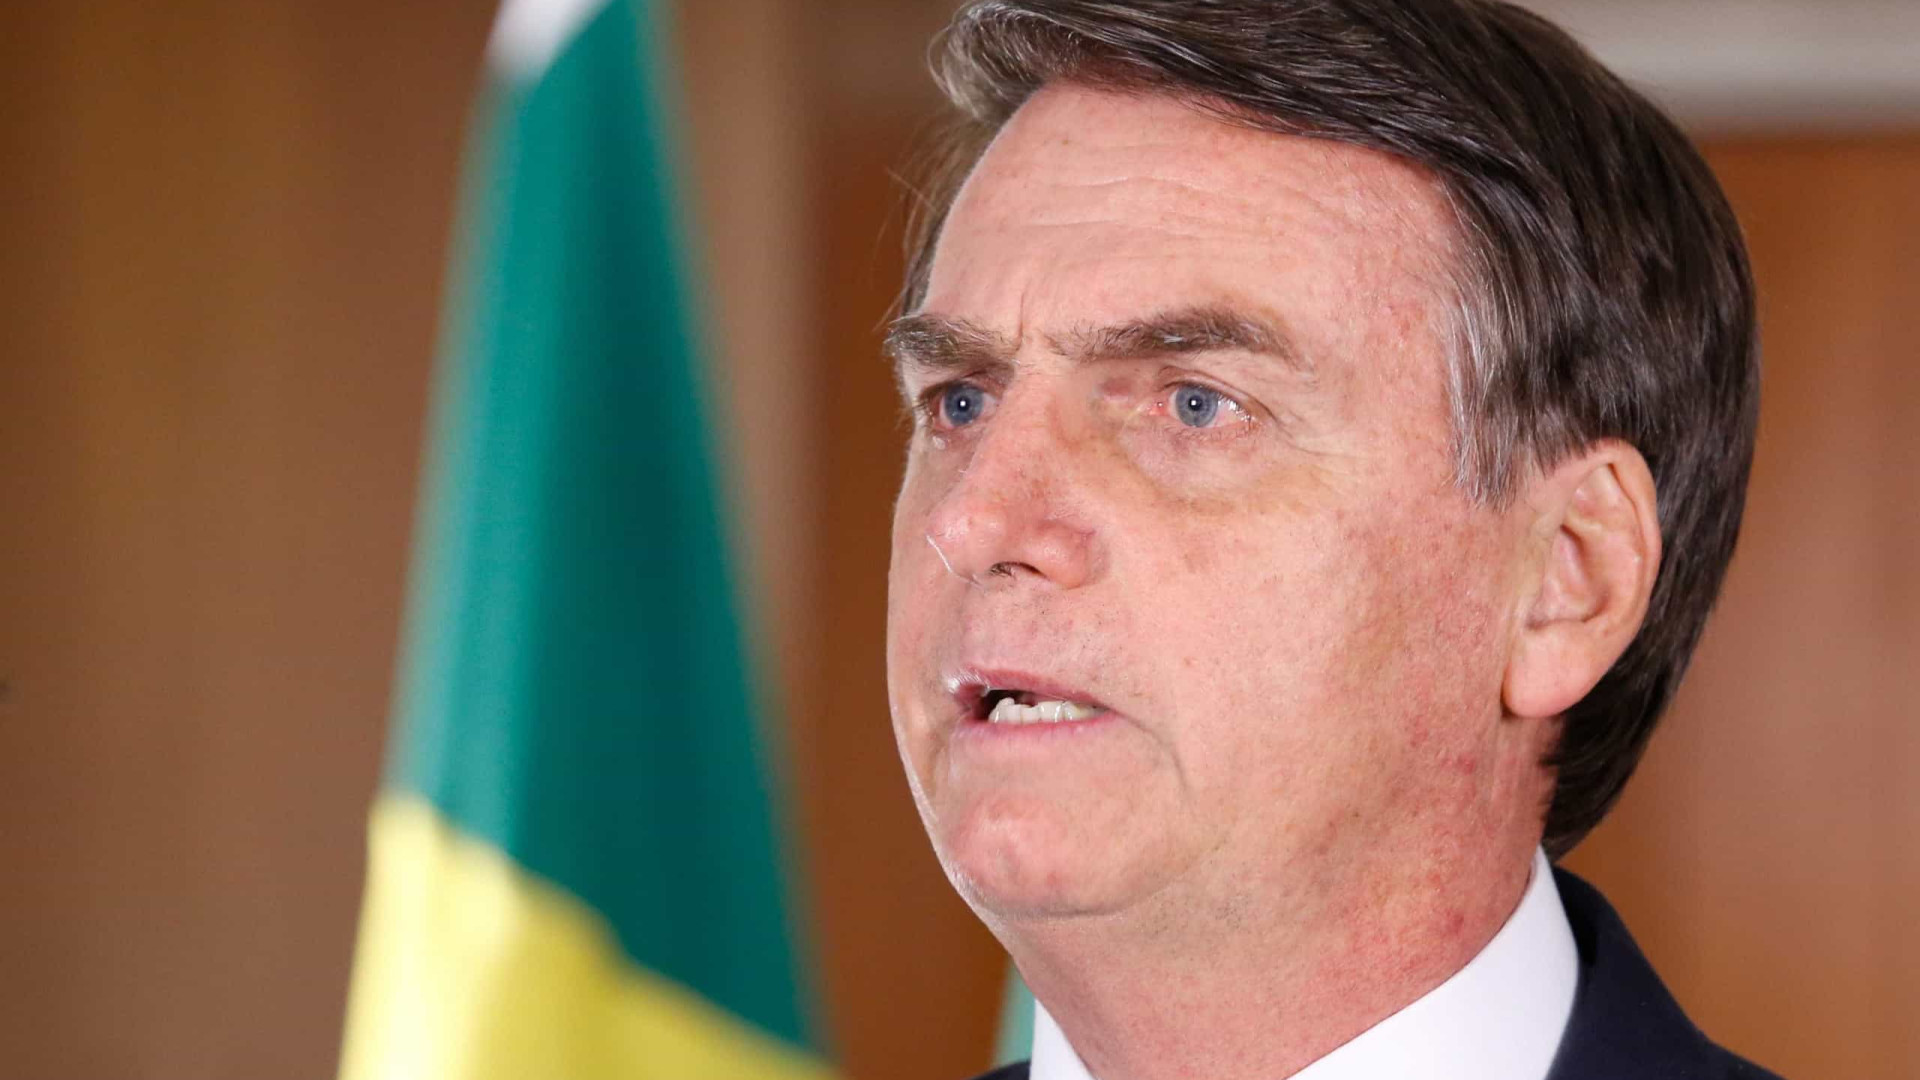 Tomografia descarta complicações cirúrgicas em Bolsonaro, diz boletim